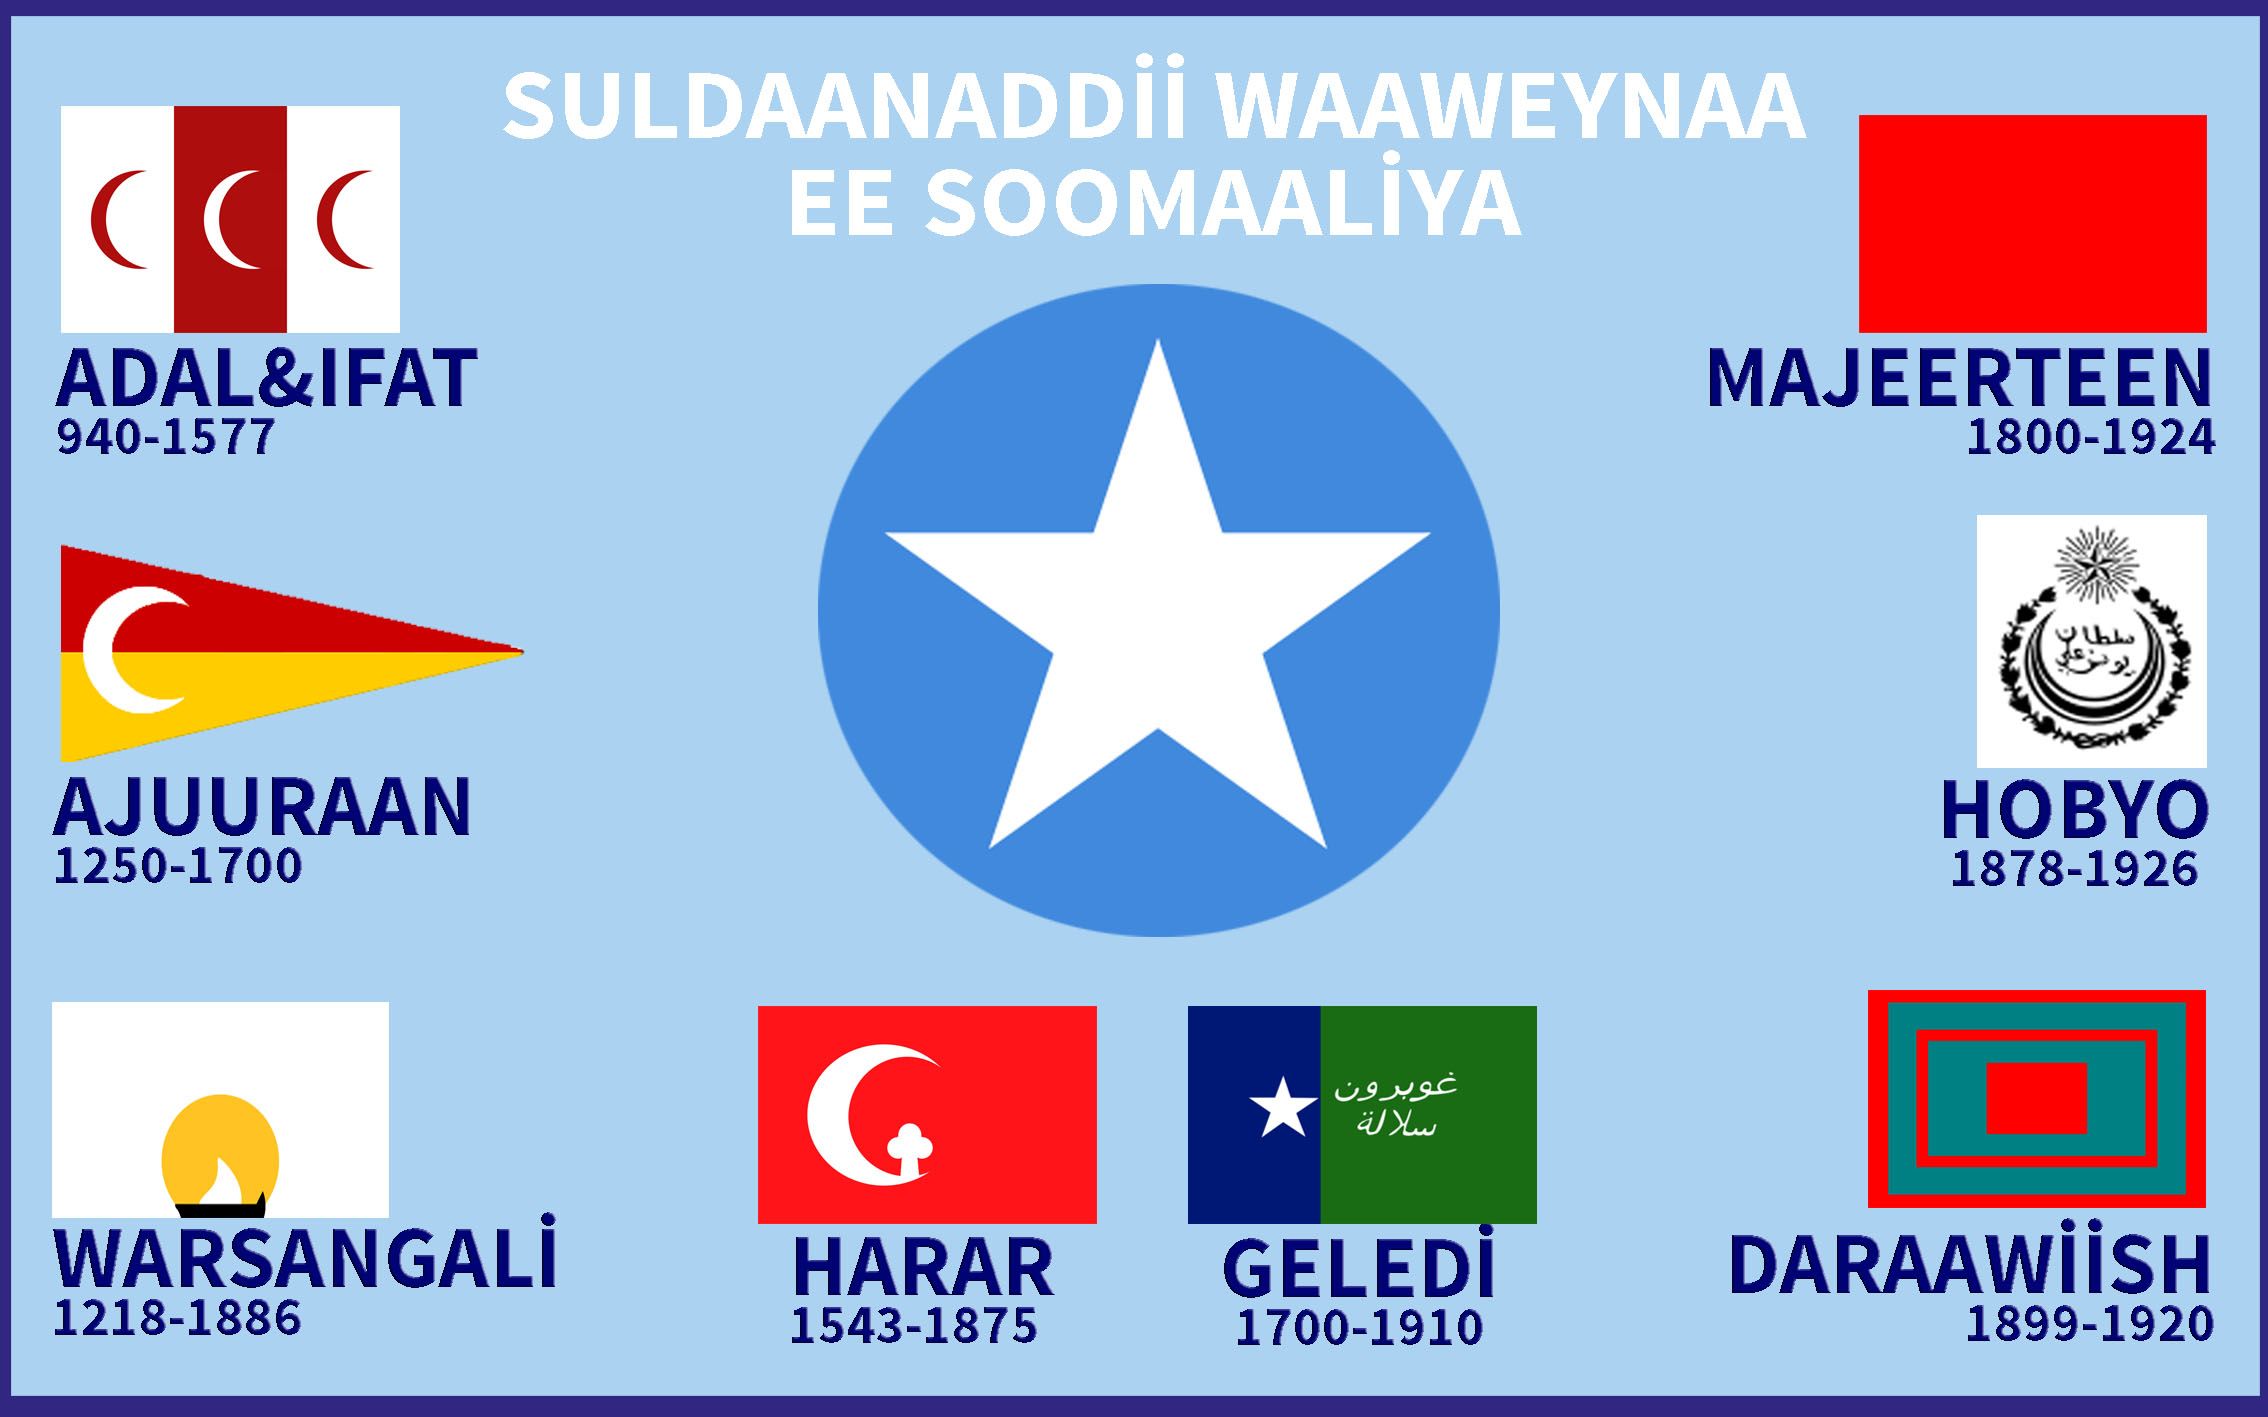 Historia | Somalia, History, Somali